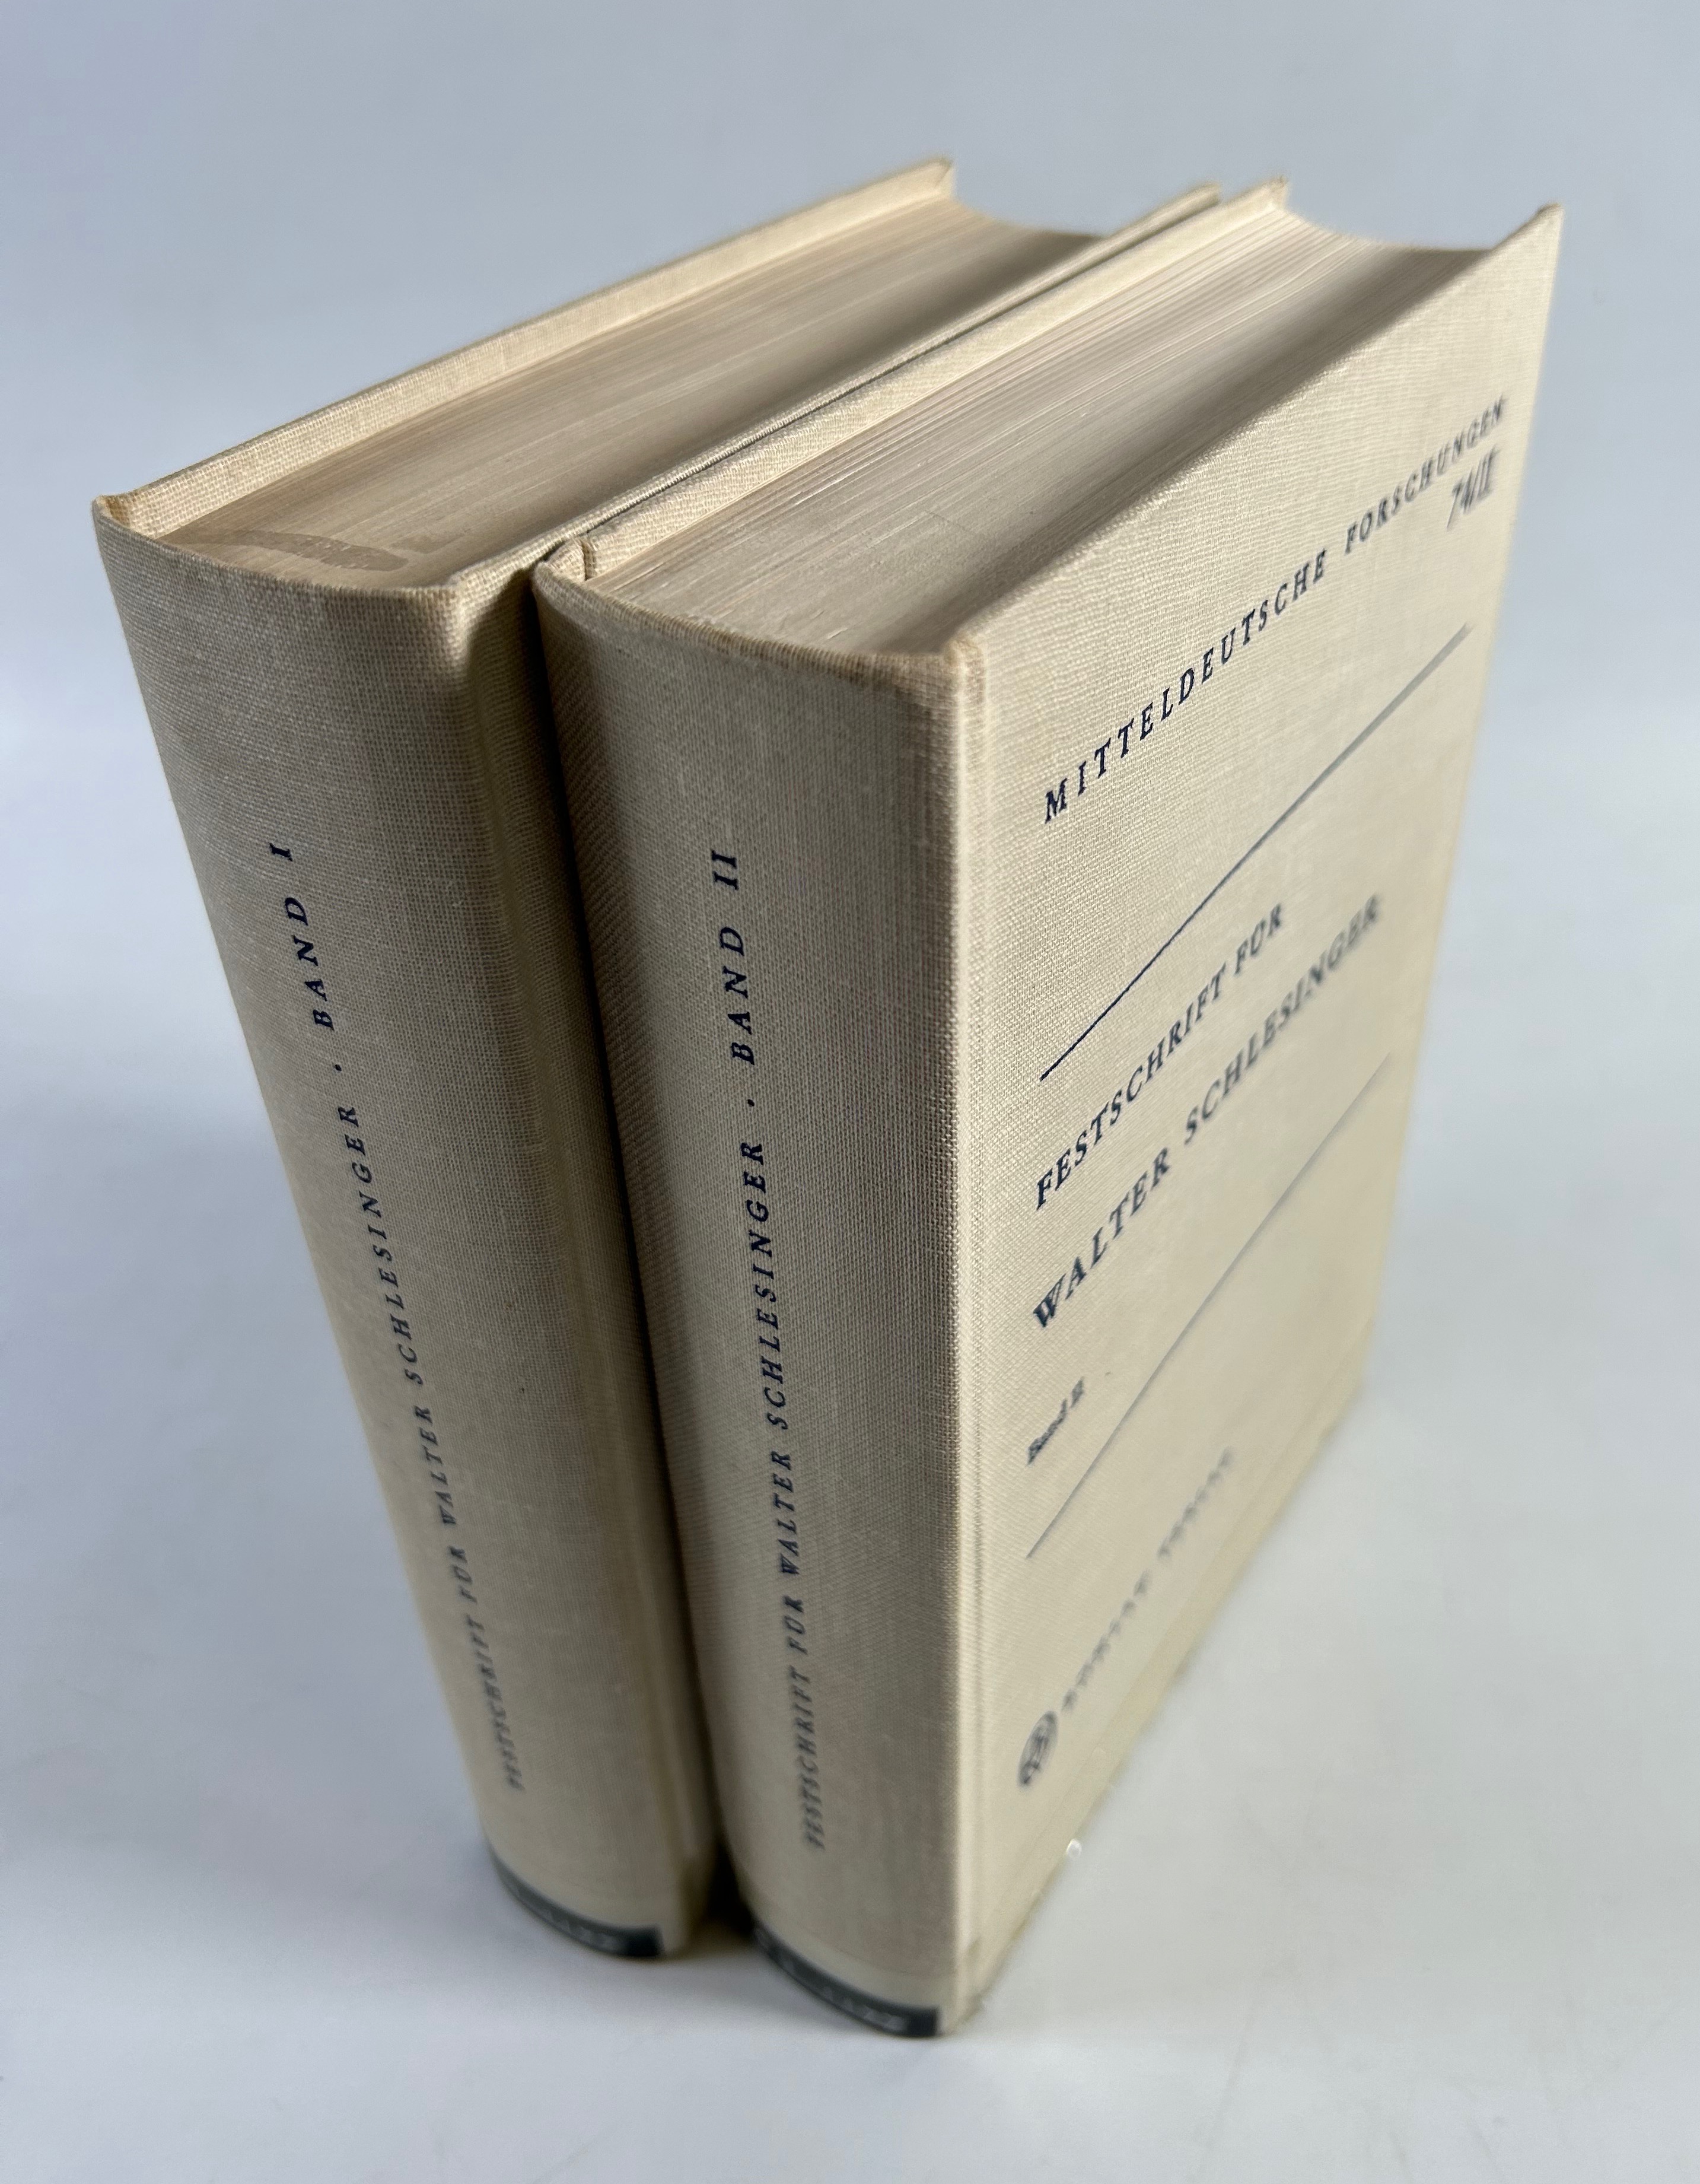 Festschrift für Walter Schlesinger. Band I und II. (= Mitteldeutsche Forschungen 74/I und 74/II). - Beumann, Helmut (Hg.)